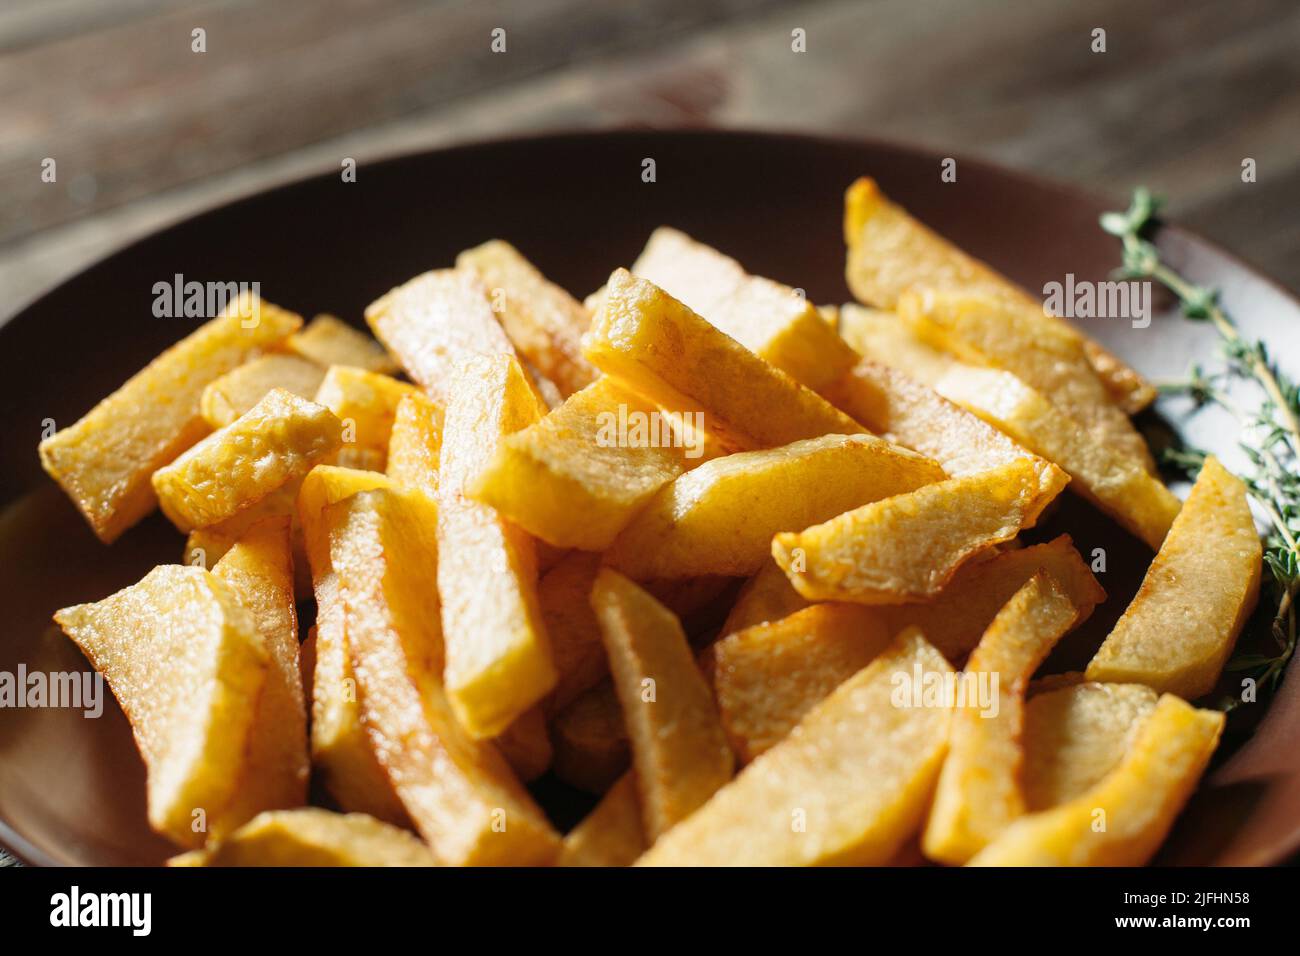 Quartiers de pommes de terre frits dans un bol en argile Banque D'Images